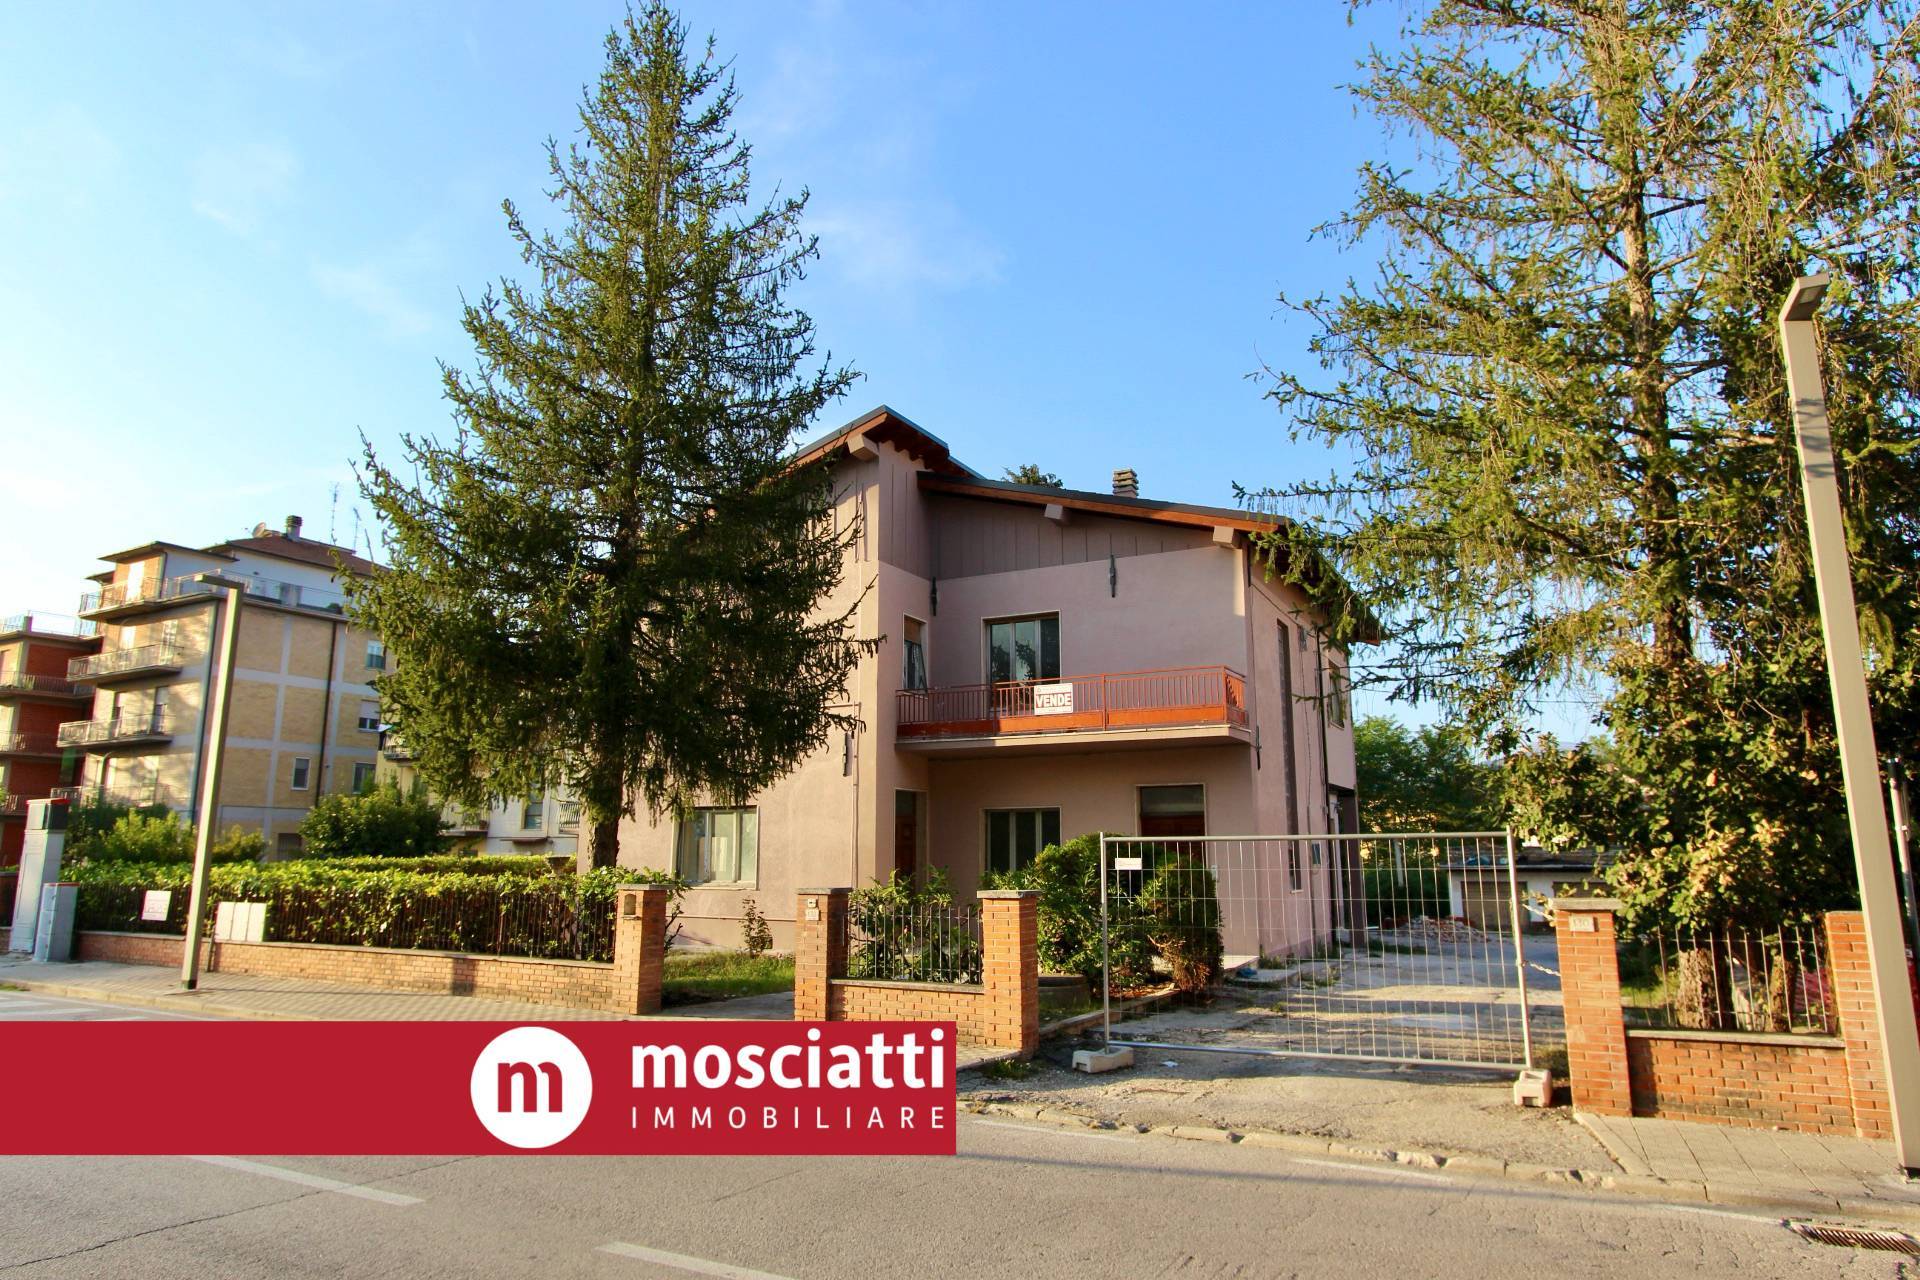 Appartamento in vendita a Castelraimondo, 4 locali, prezzo € 140.000 | PortaleAgenzieImmobiliari.it